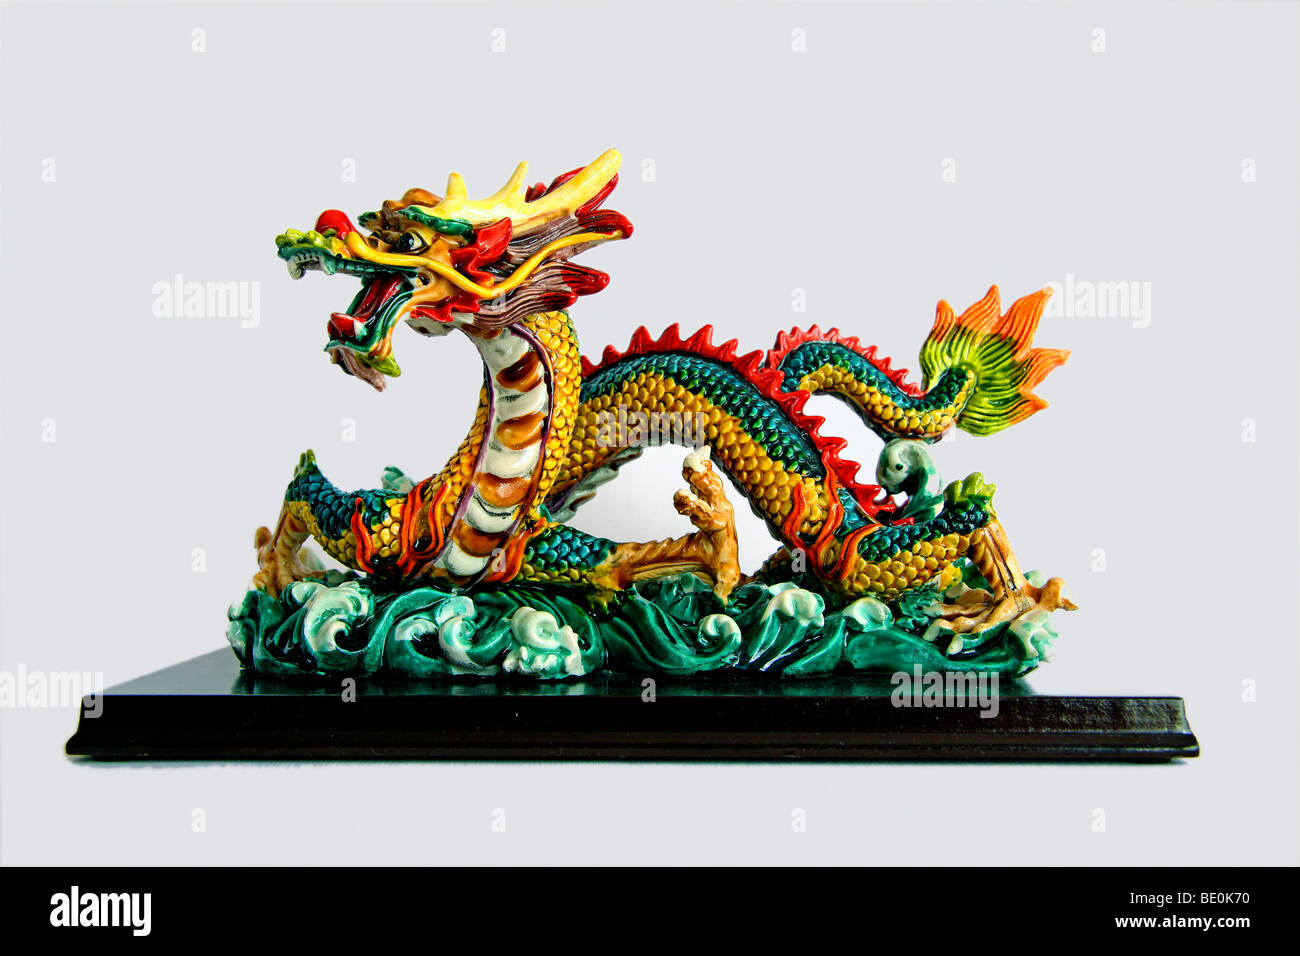 Chinesischer Drache, Porzellanfigur, Souvenir-Artikel, Hong Kong, China, Asien Stockfoto